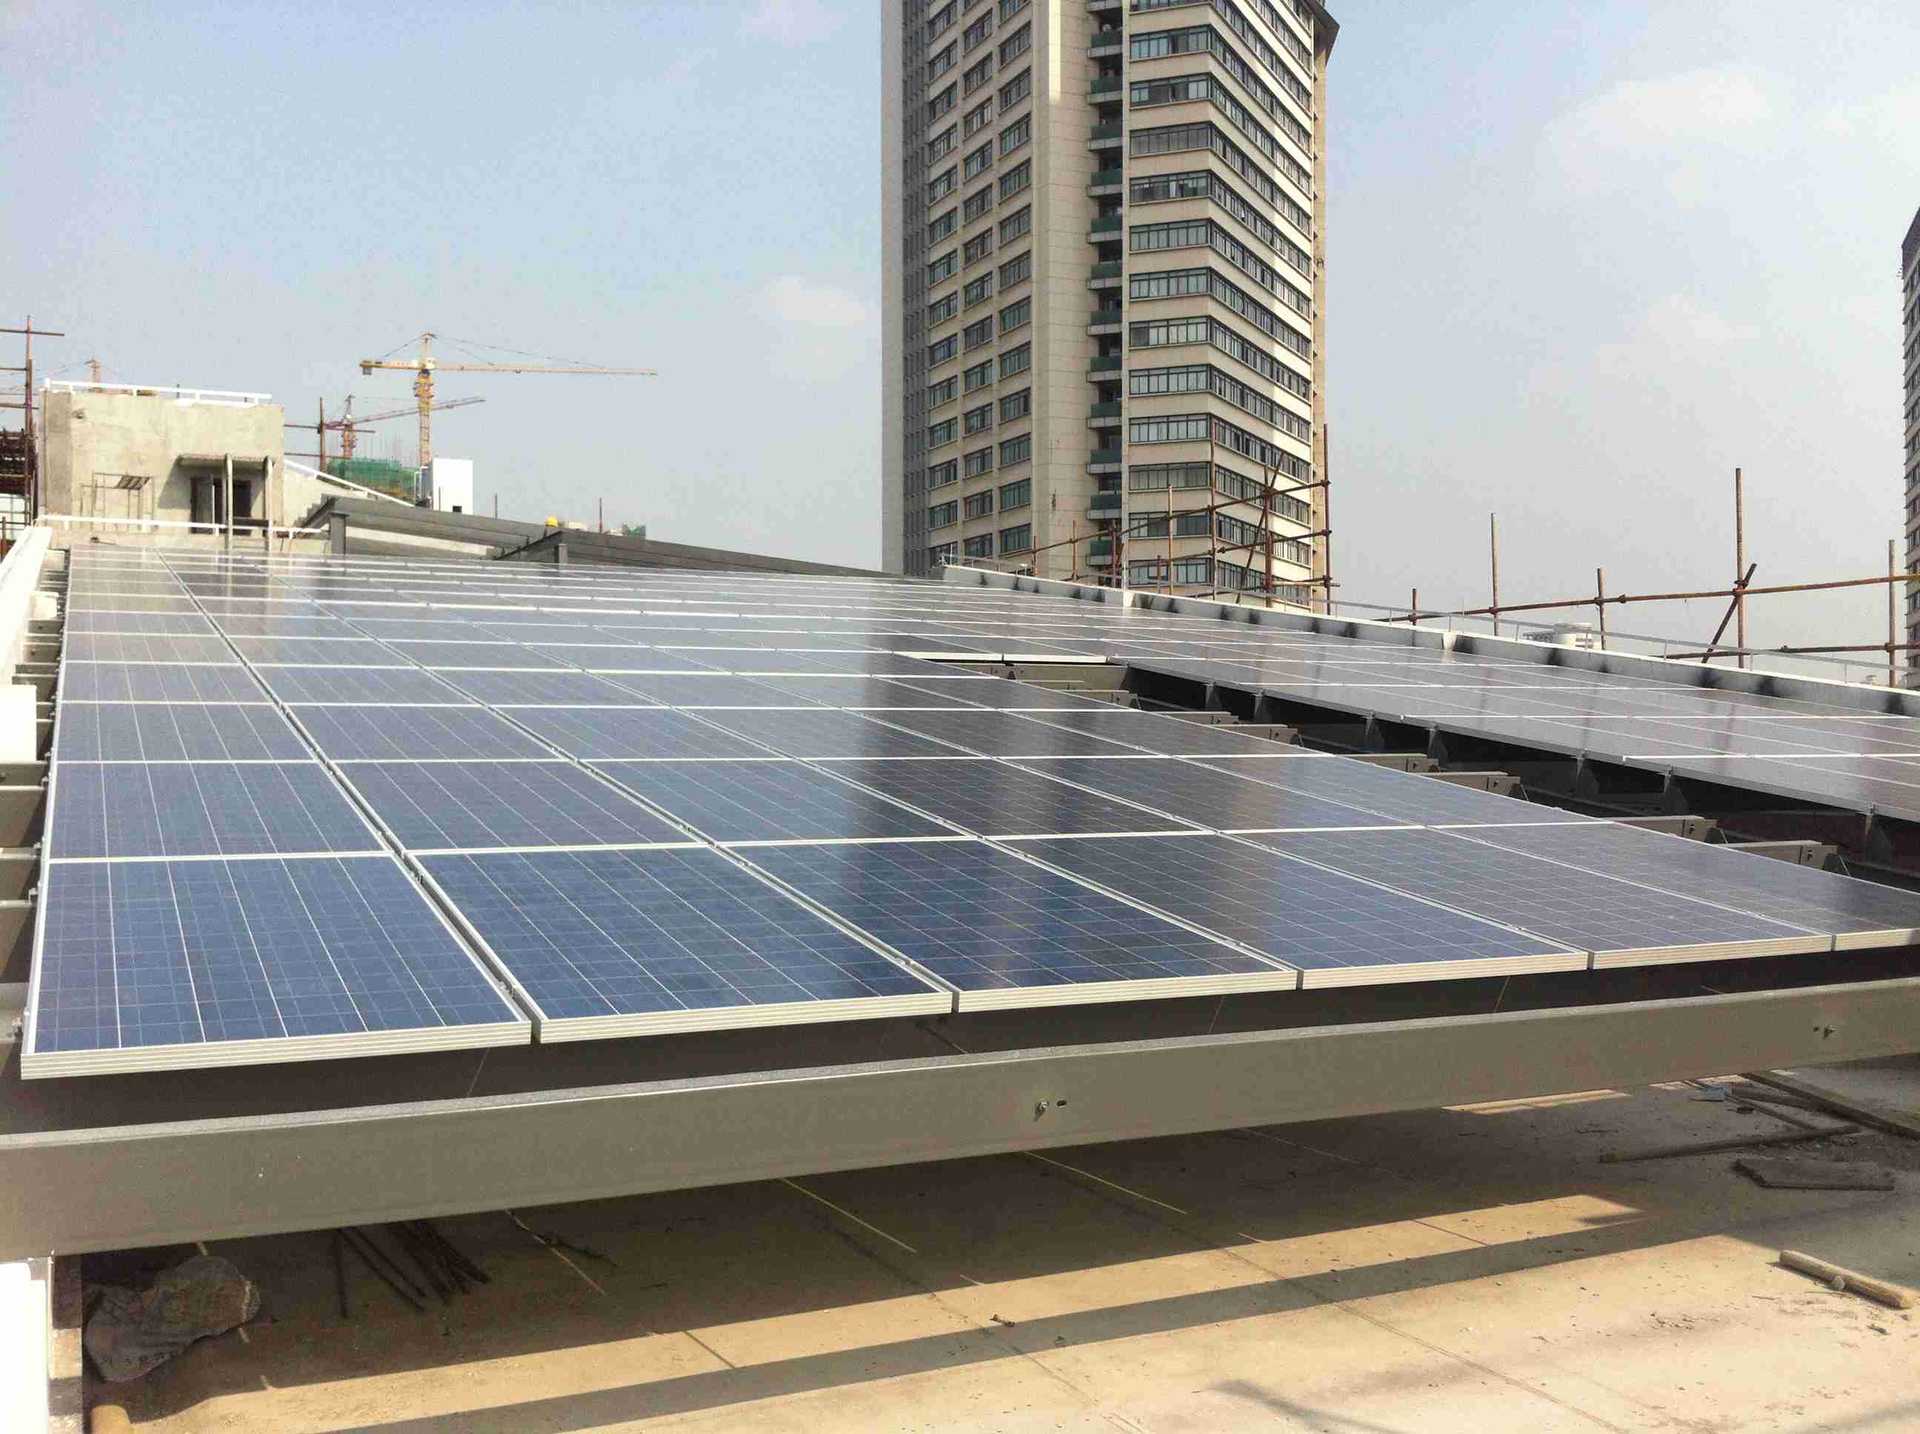 上海專利商標事務所55KW太陽能發電系統工程_副本_副本